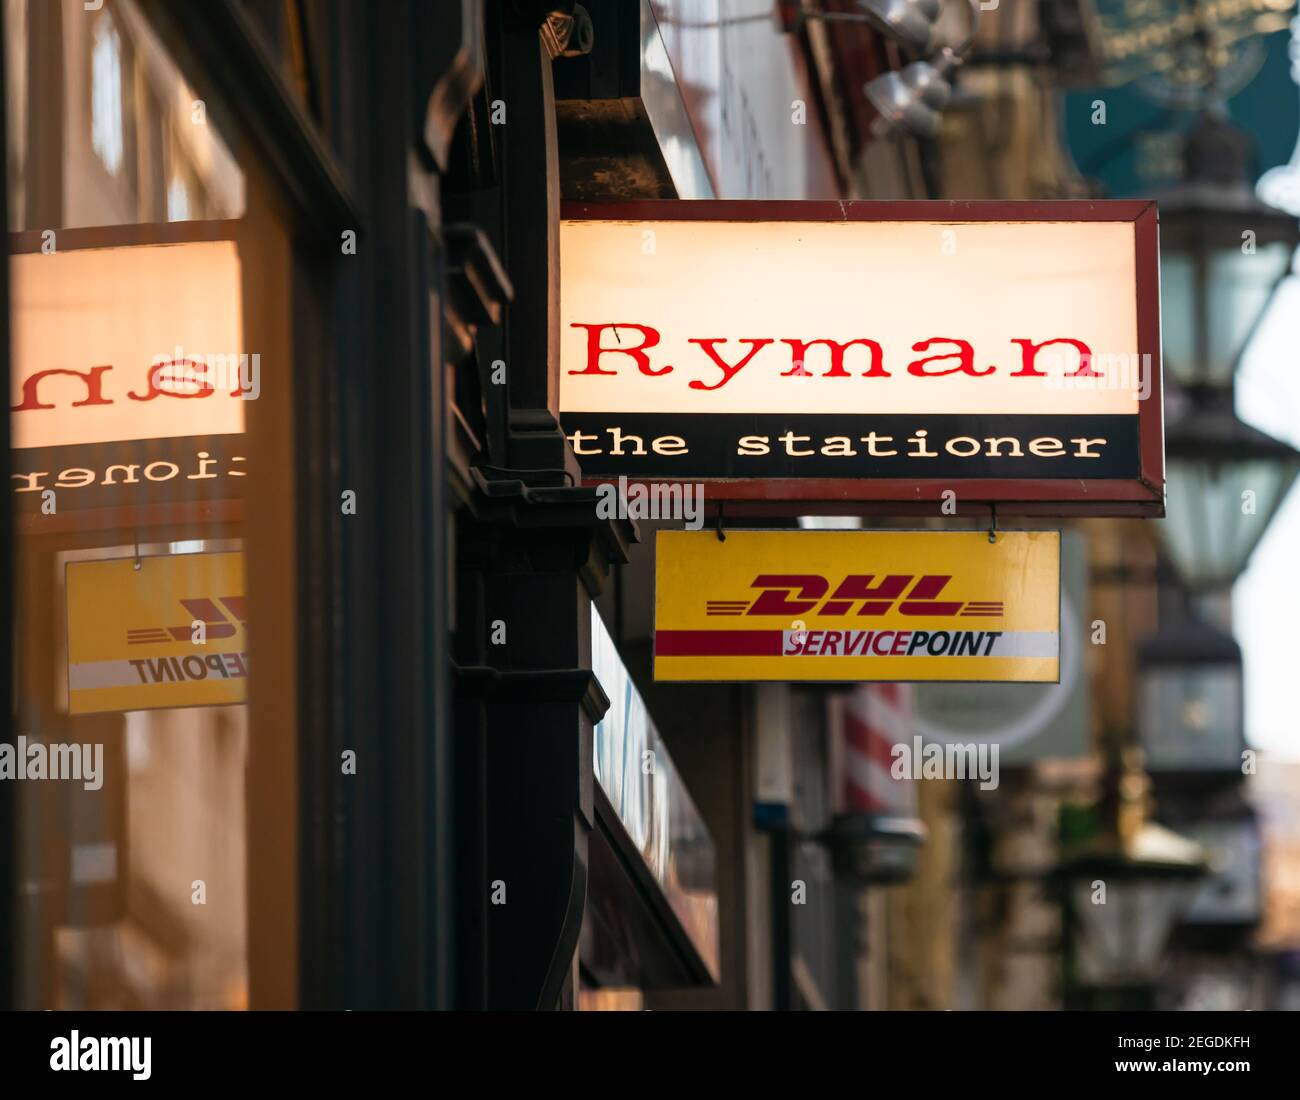 Ryman, l'enseigne du magasin de papeterie Stationer avec réflexion de fenêtre, et l'enseigne DHL Service point ci-dessous, Birmingham, Royaume-Uni Banque D'Images